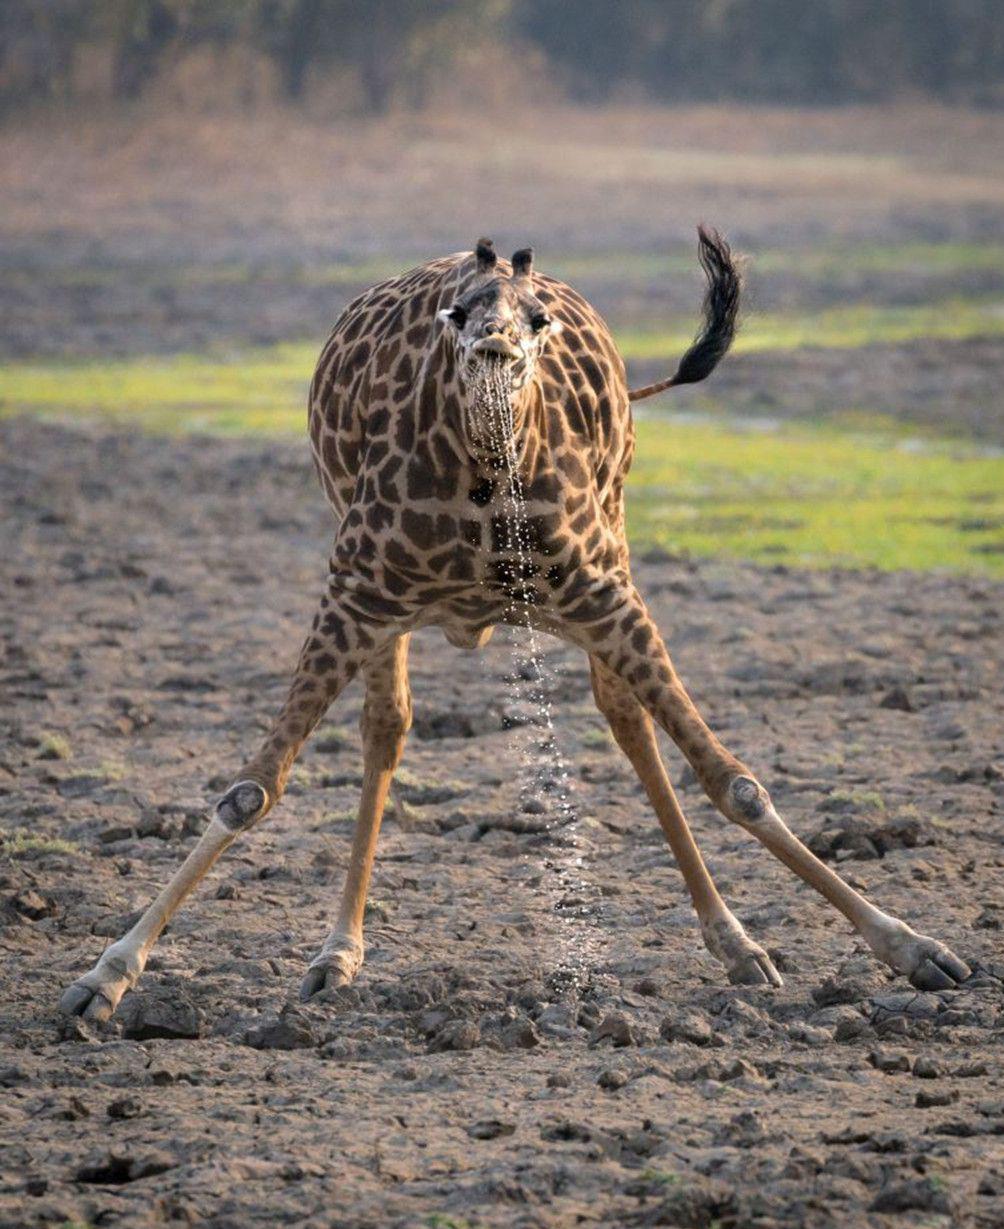 原创长颈鹿喝水有多难?长脖子并非巨型吸管,摄影师拍到珍贵瞬间